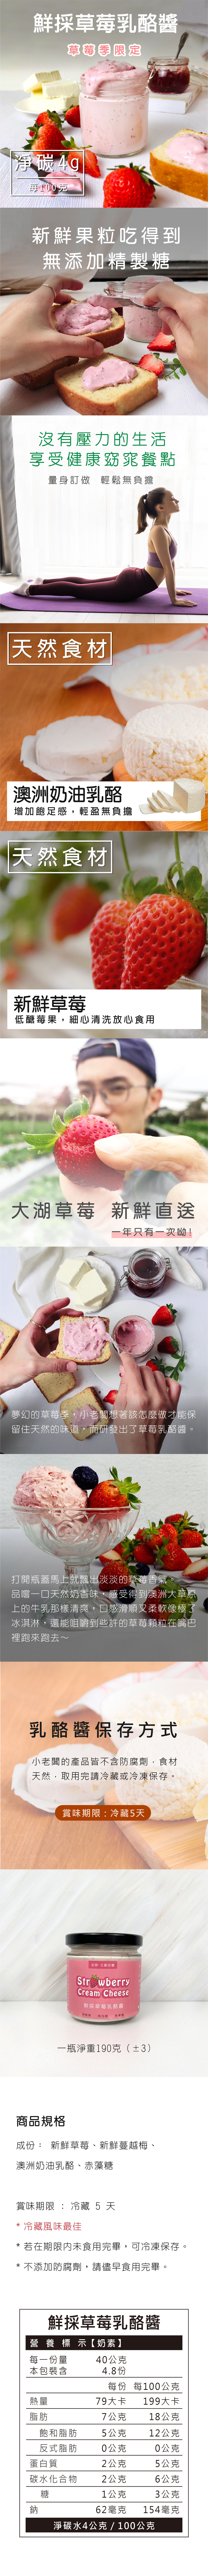 鮮採草莓乳酪醬-01.jpg